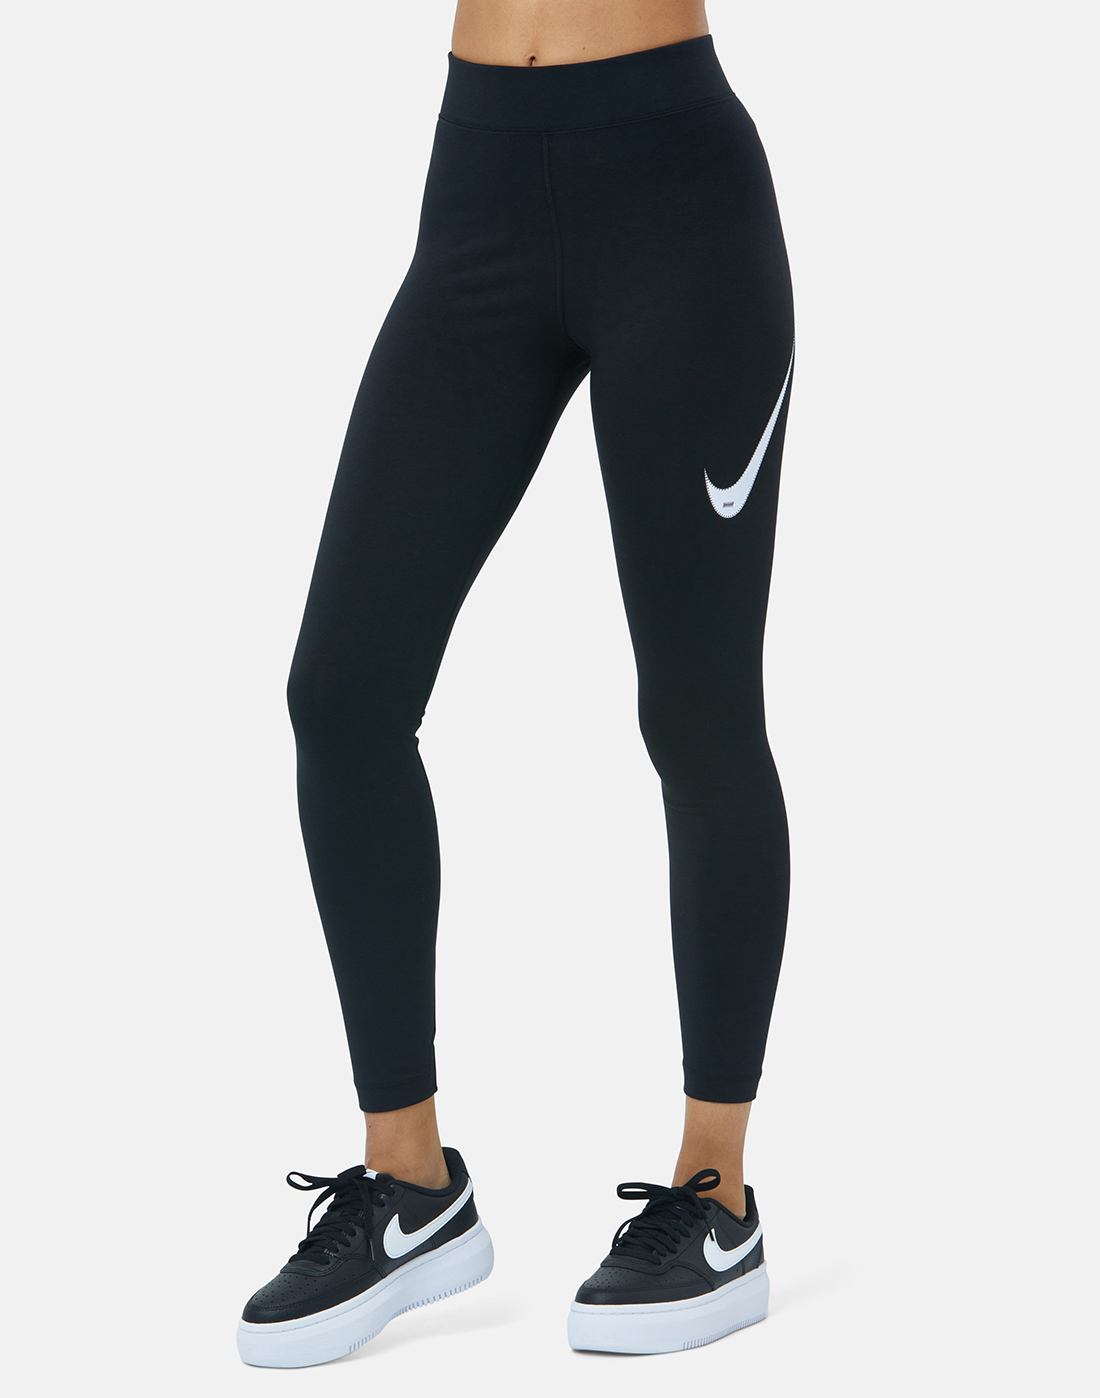 Nike WOMENS SWOOSH LEGGINGS - Black